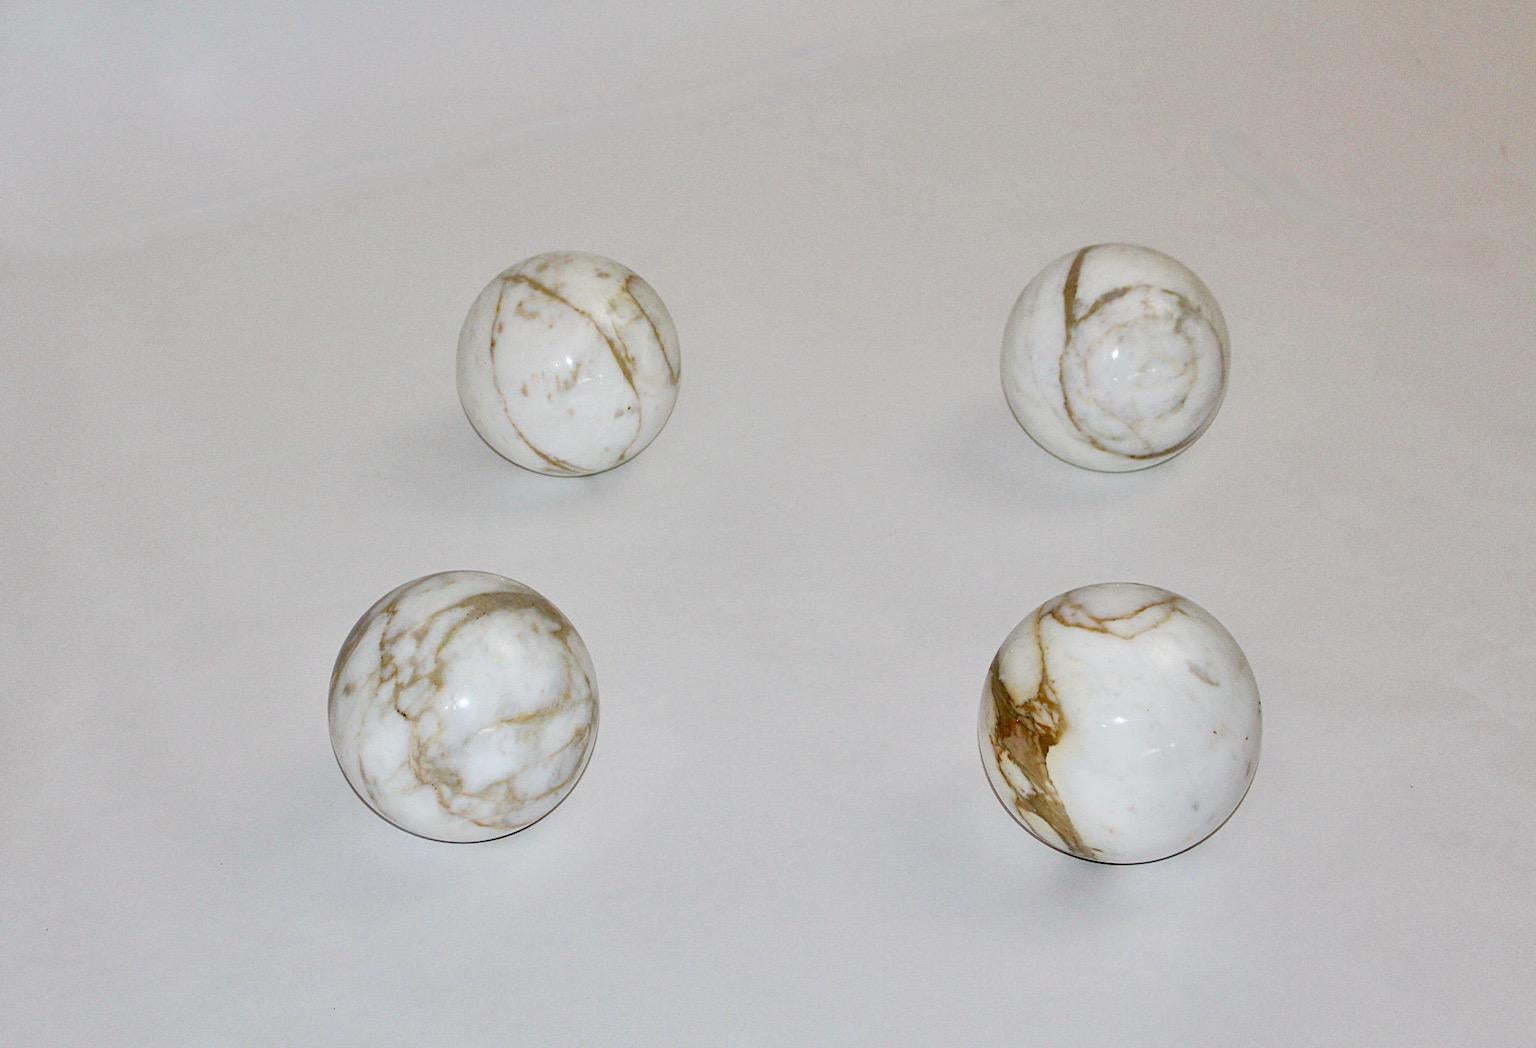 Italienische moderne Satz von 4 Vintage weißen Marmor Kugeln mit hellbraunen Streuseln gepfeffert entworfen und hergestellt in Italien 1970er Jahren.
Die schöne Farbe in sanften Tönen sorgt für ein wunderschönes Dekor in Ihrem Innenraum oder auf